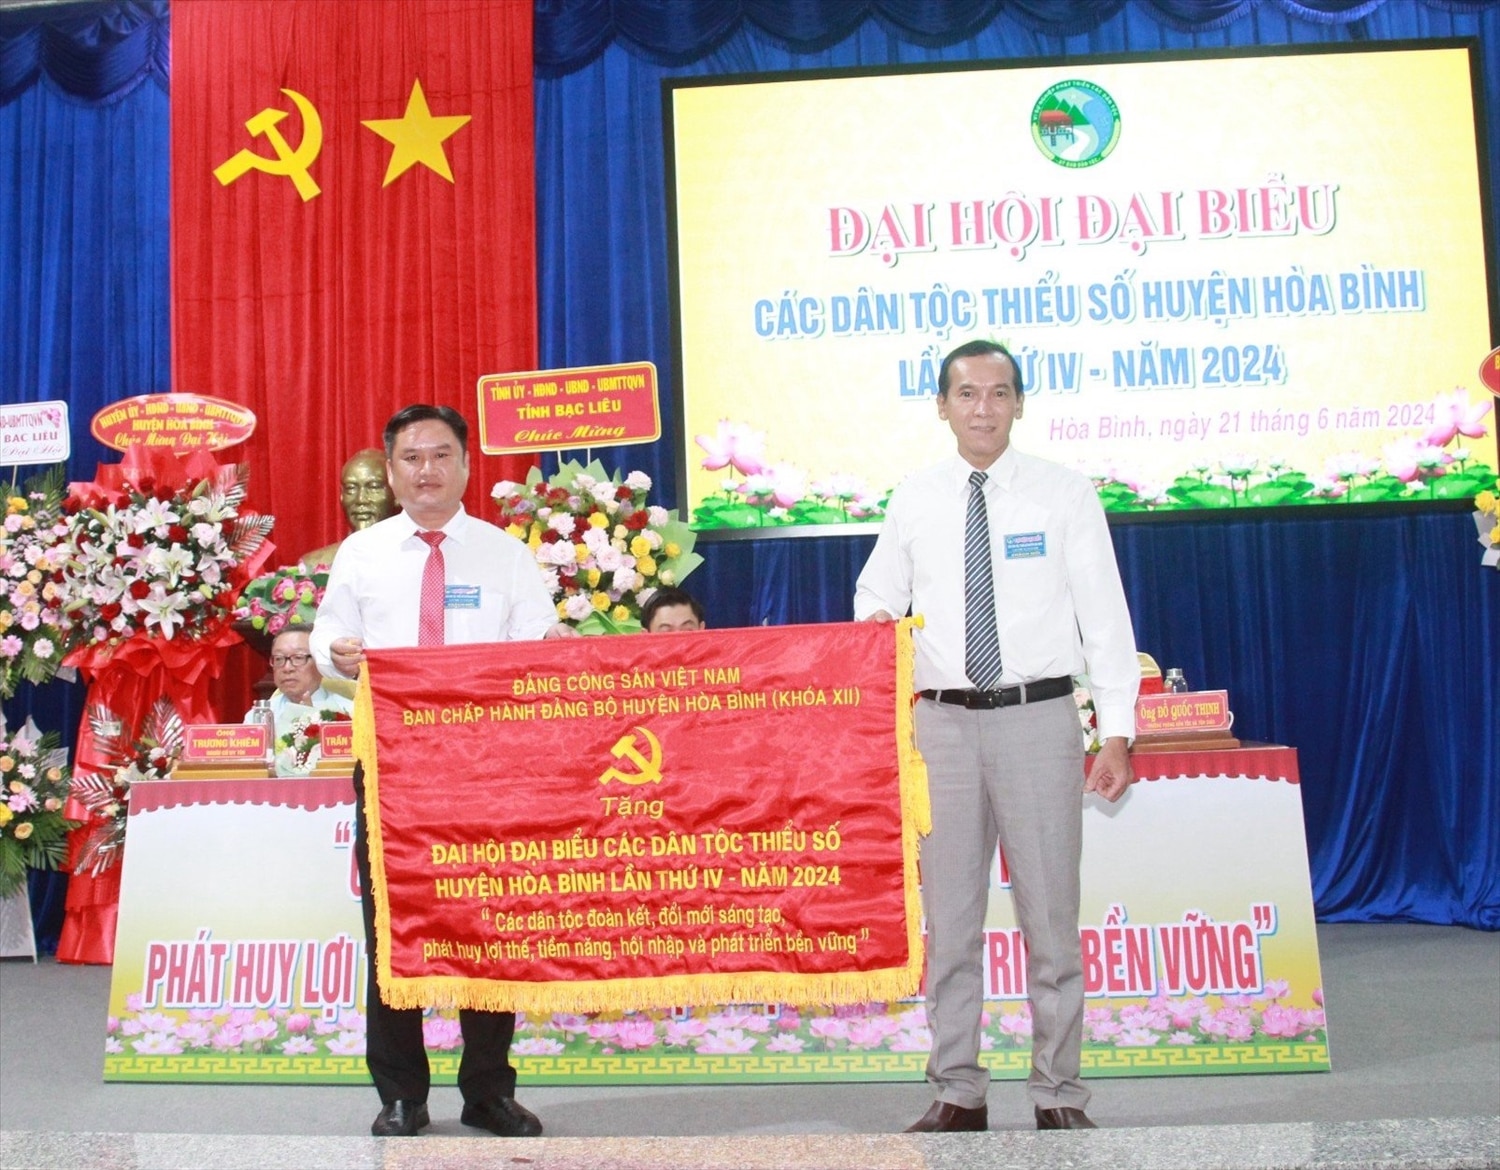 Huyện uỷ huyện Hoà Bình đã tặng bức trướng đến Đại hội đại biểu các DTTS 